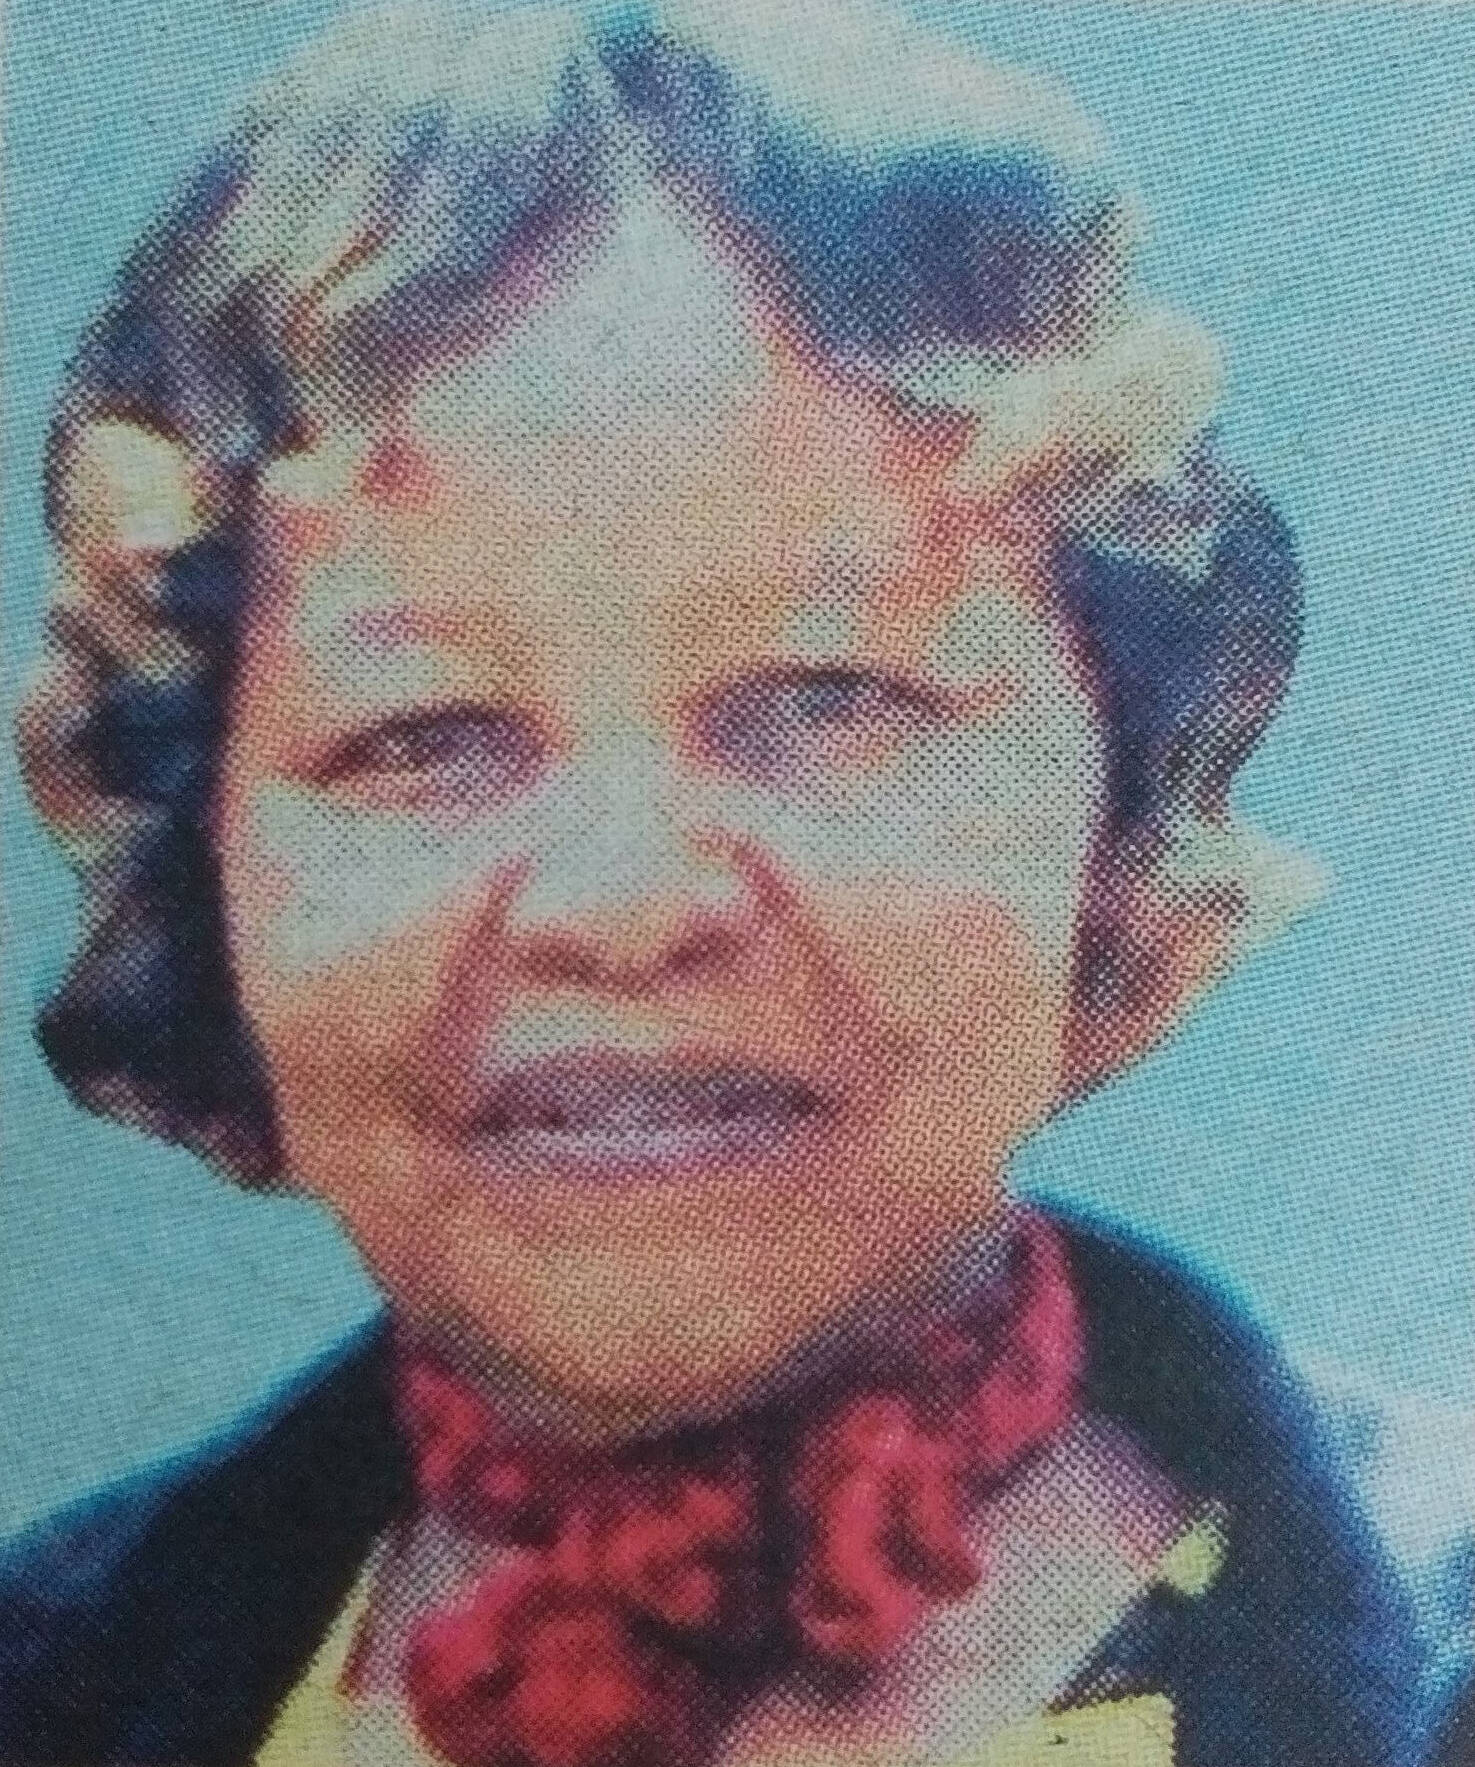 Obituary Image of Lilian Wairimu Mutembei Sunrise 1954 Sunset 5/4/2017